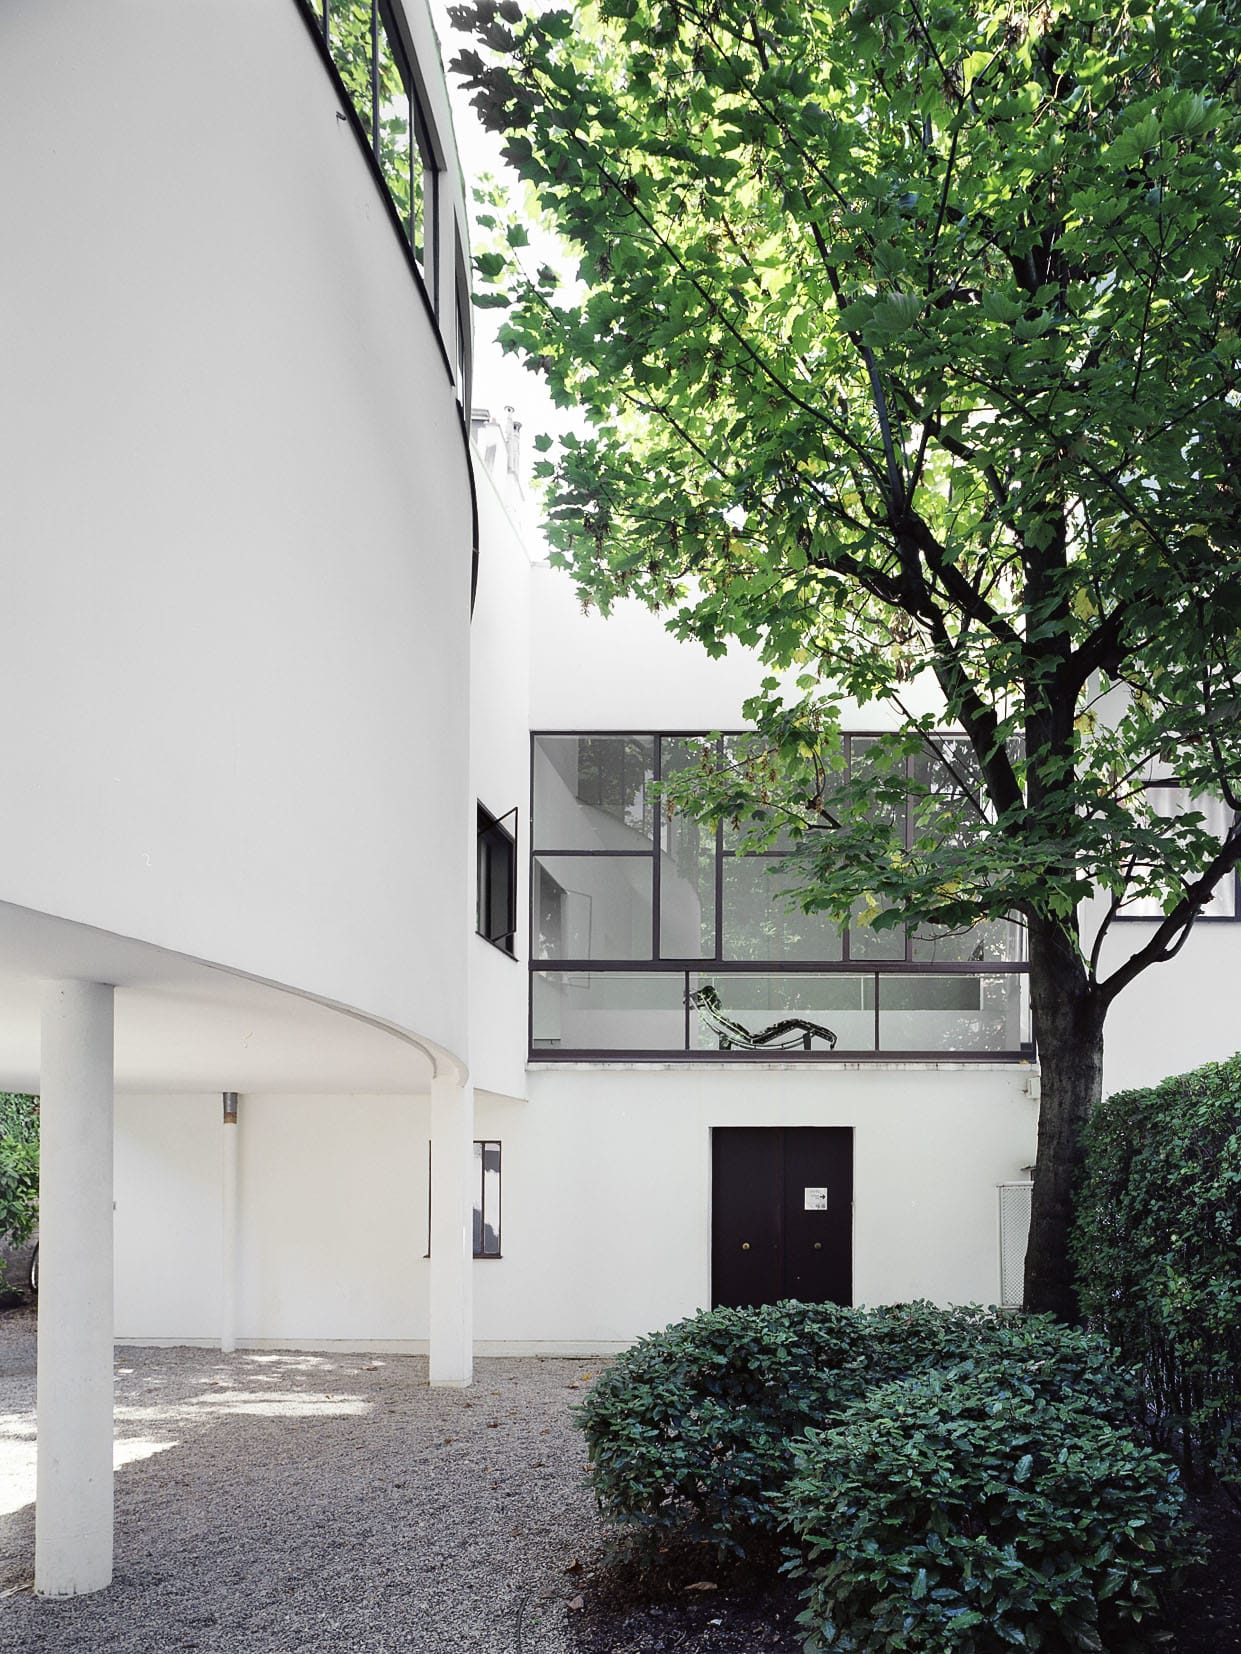 MAISON LA ROCHE-JEANNERET｜勒·柯布西耶 Le Corbusier